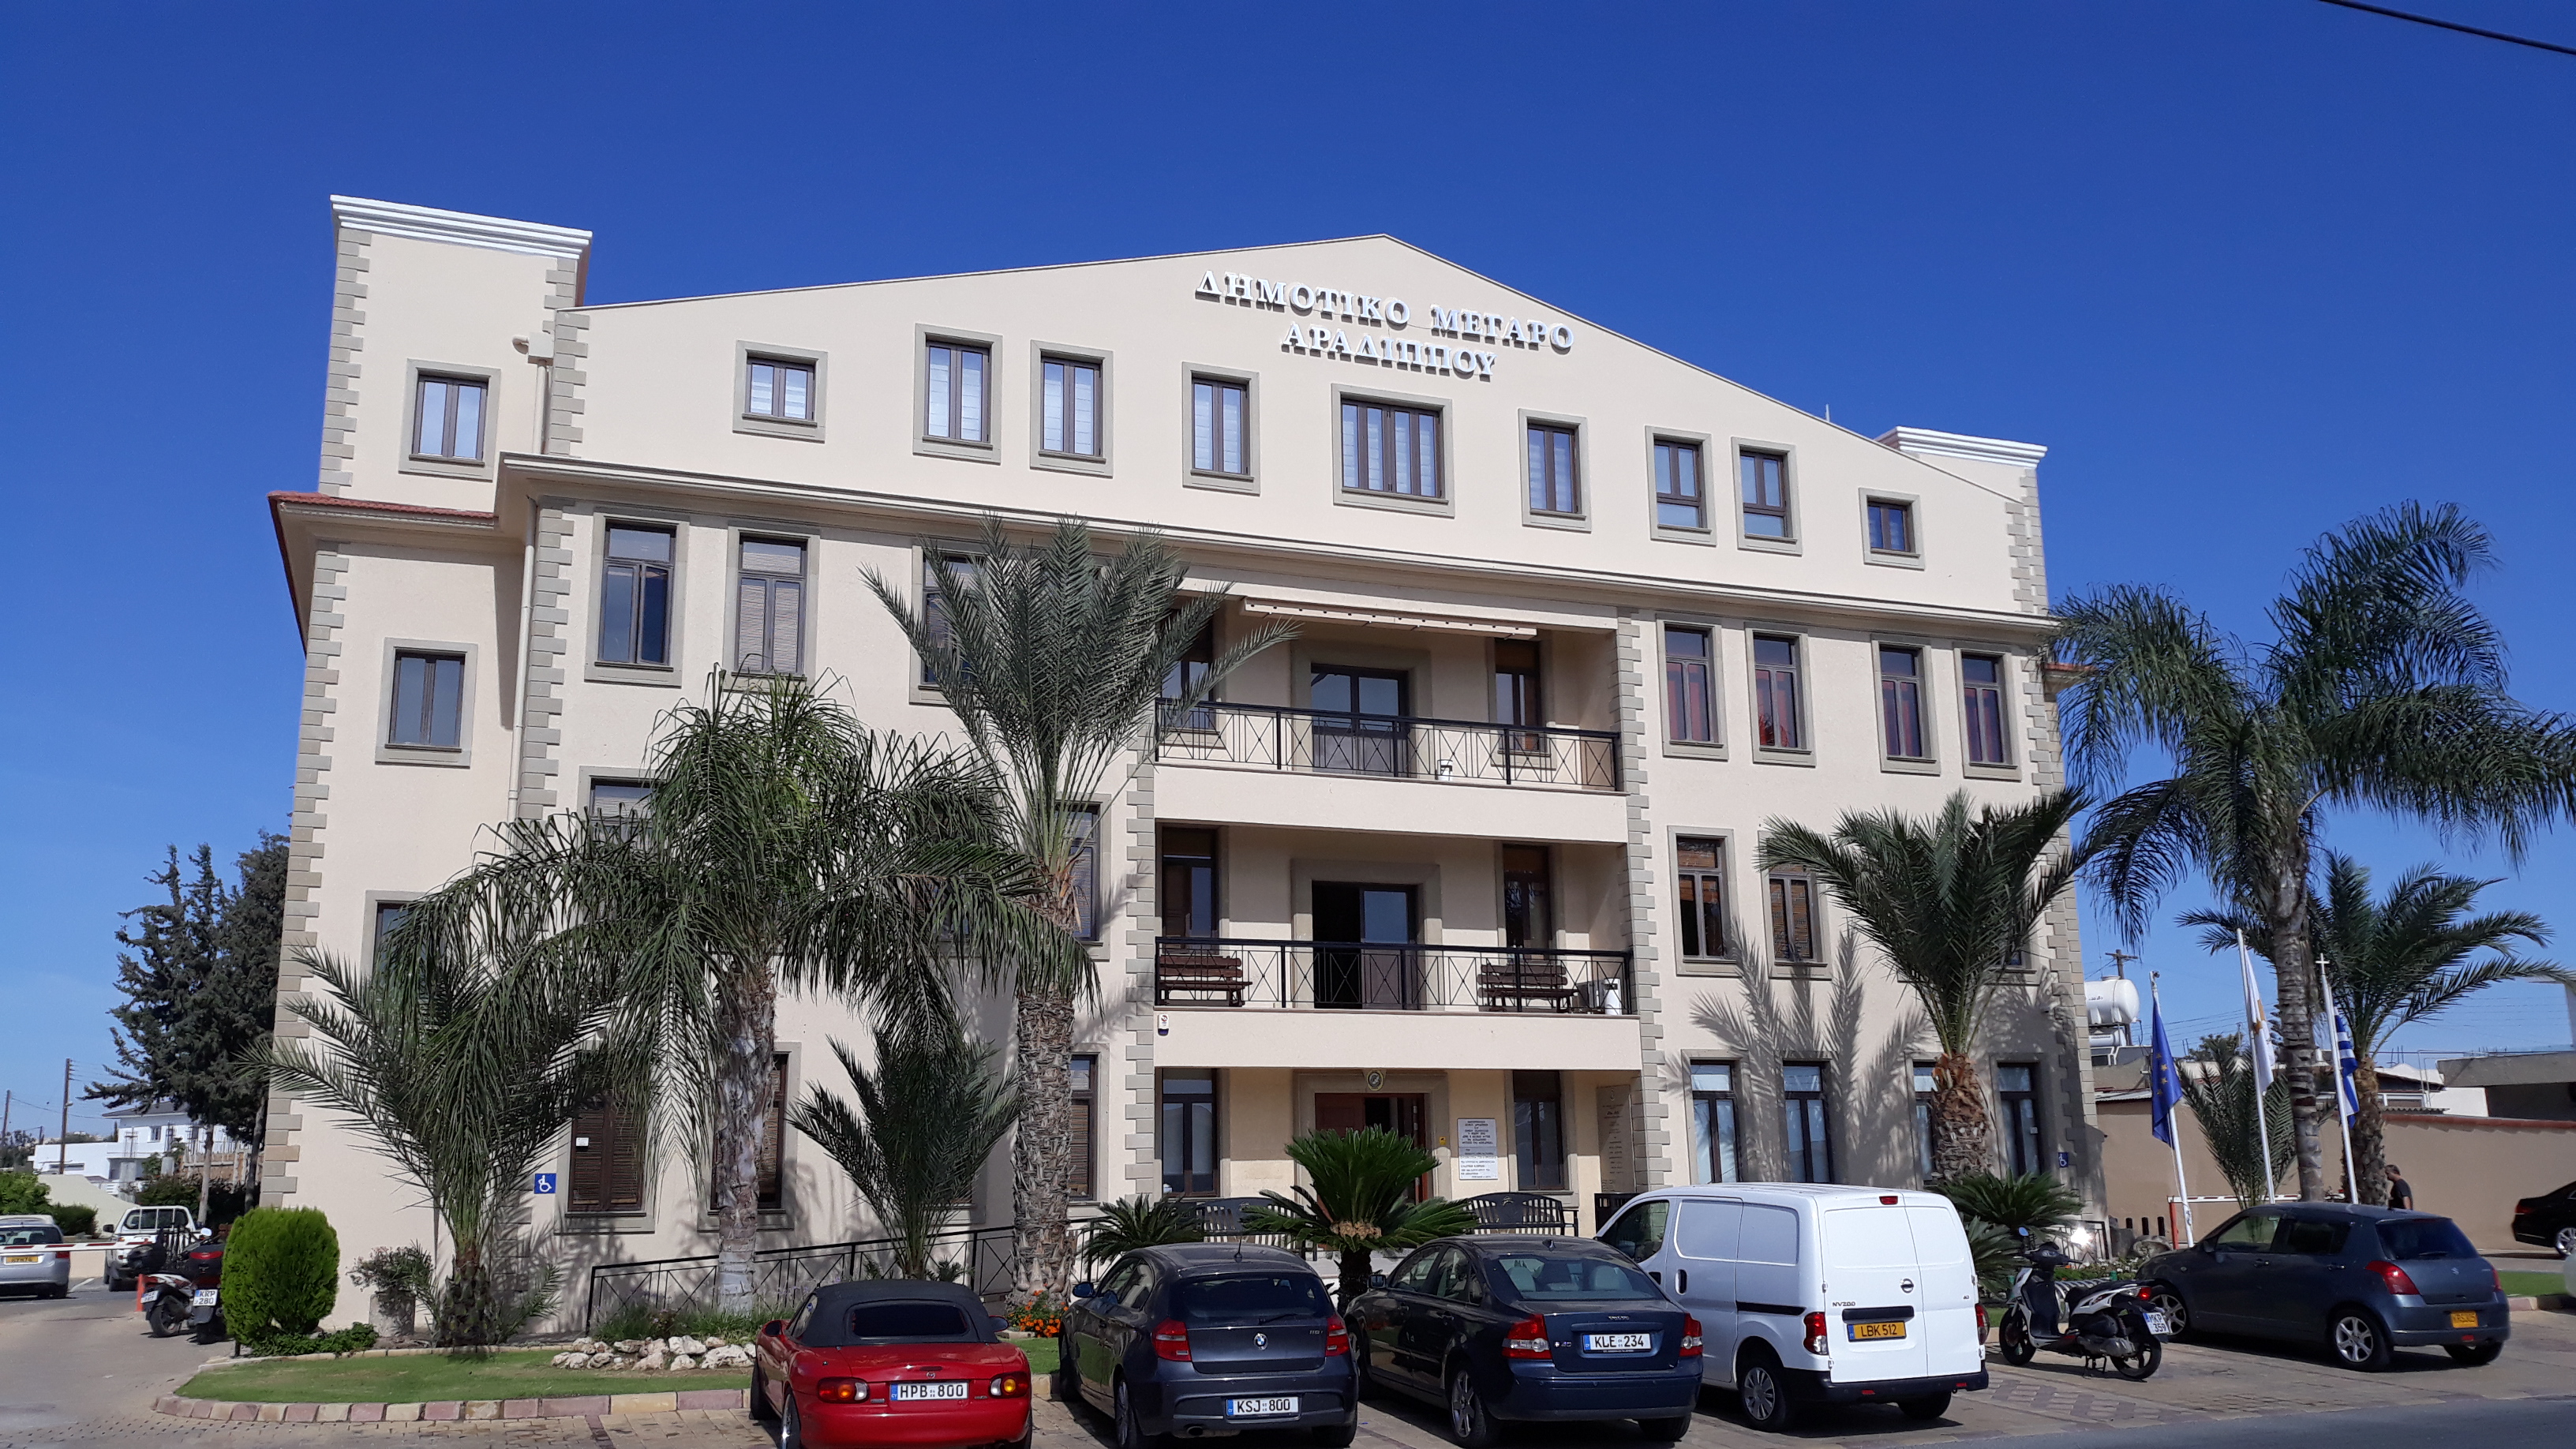 Το Ελεύθερο Πανεπιστήμιο του Δήμου Αραδίππου ανακοινώνει την έναρξη της λειτουργίας του 8ο έτους